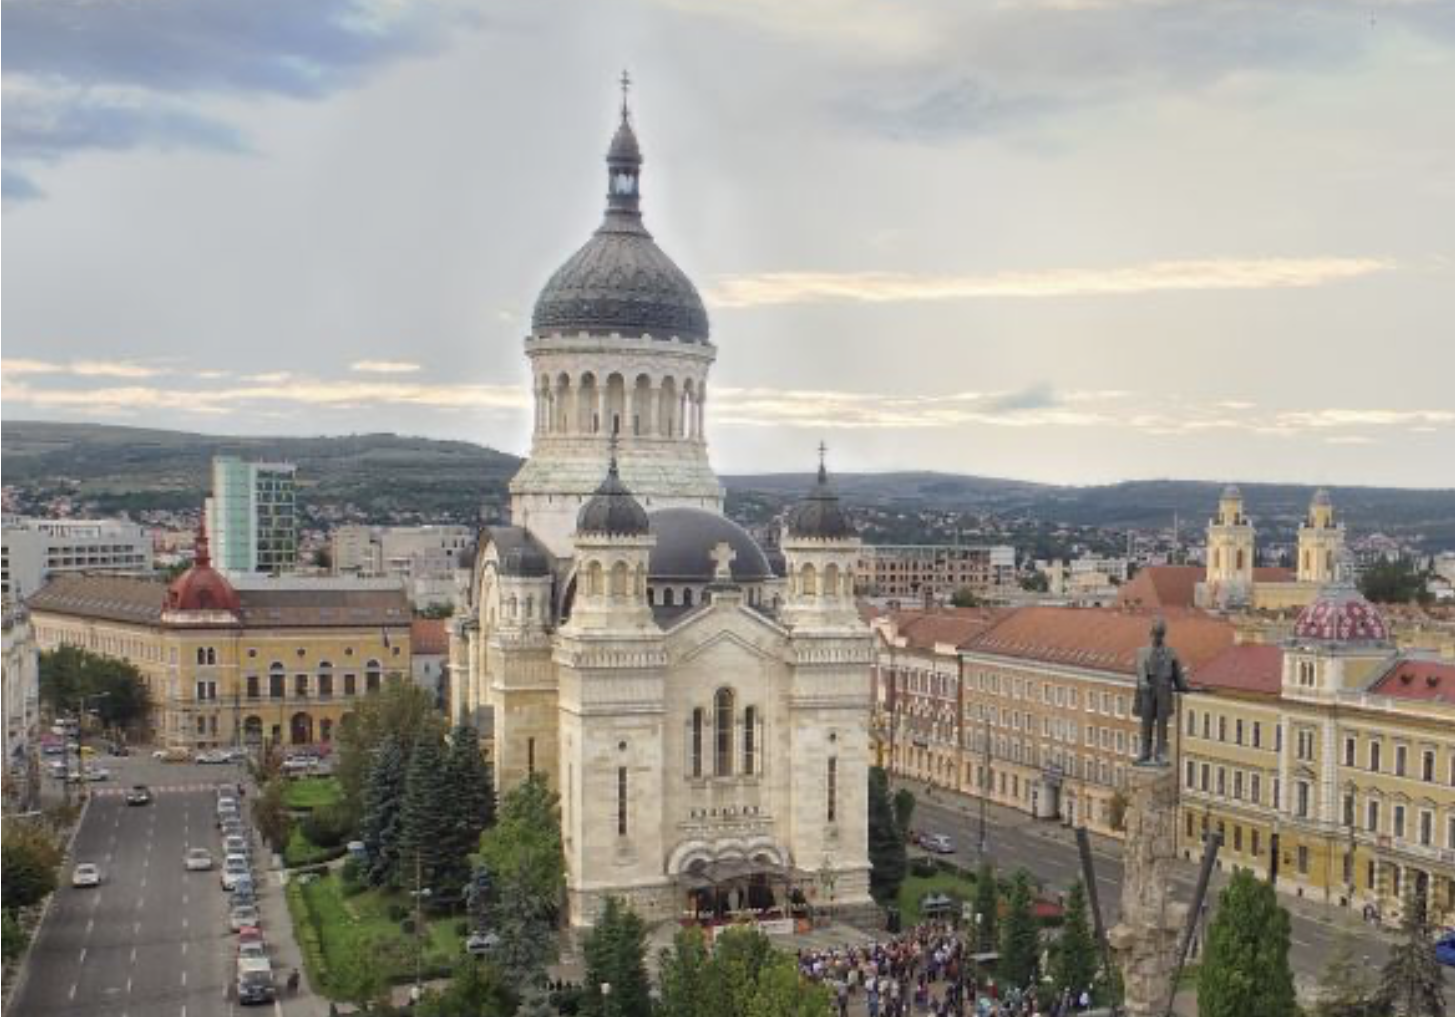 Catedrala Mitropolitană din Cluj-Napoca va fi inclusă în circuitul turistic prin intermediul unui proiect de reabilitare și restaurare.